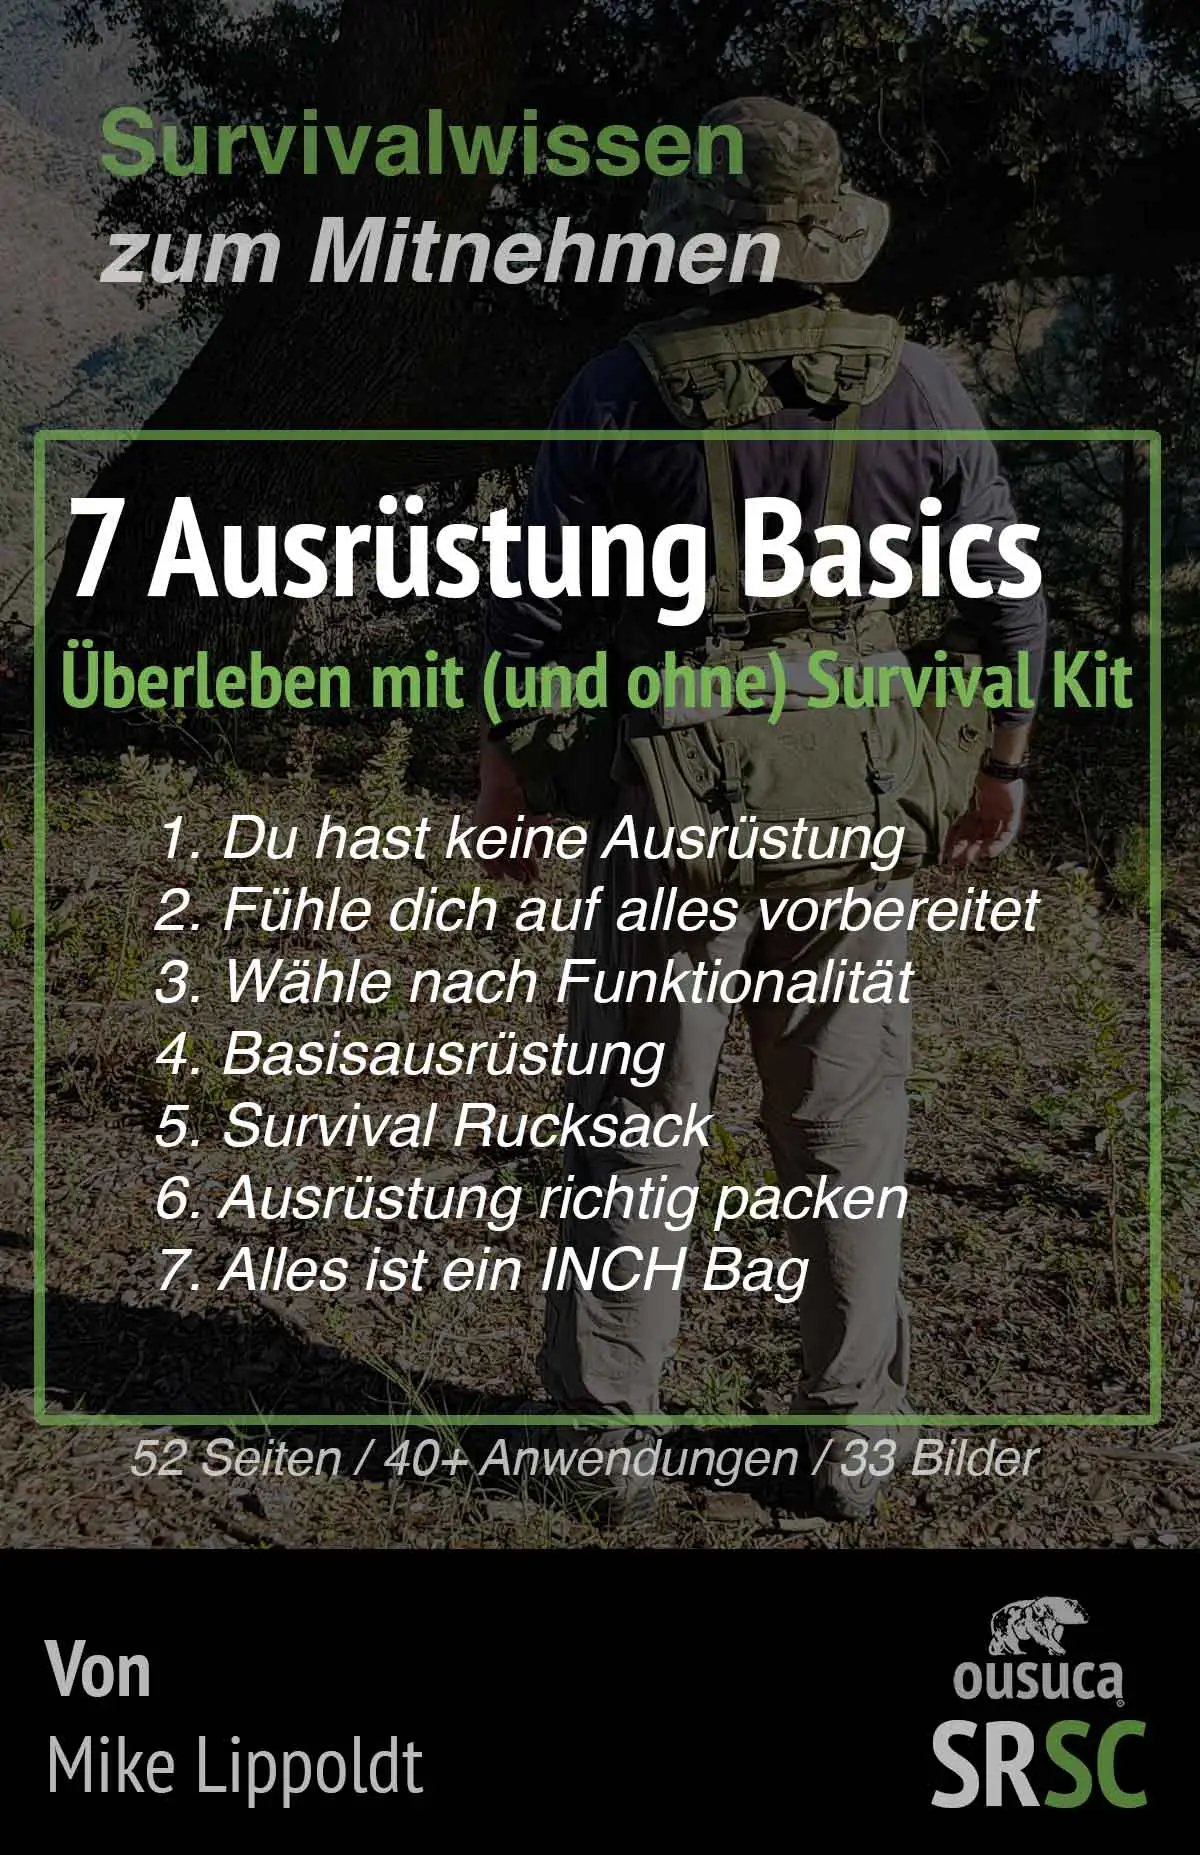 Survivalausrüstung Liste, PDF, Buch: Überleben mit und ohne Survival Kit